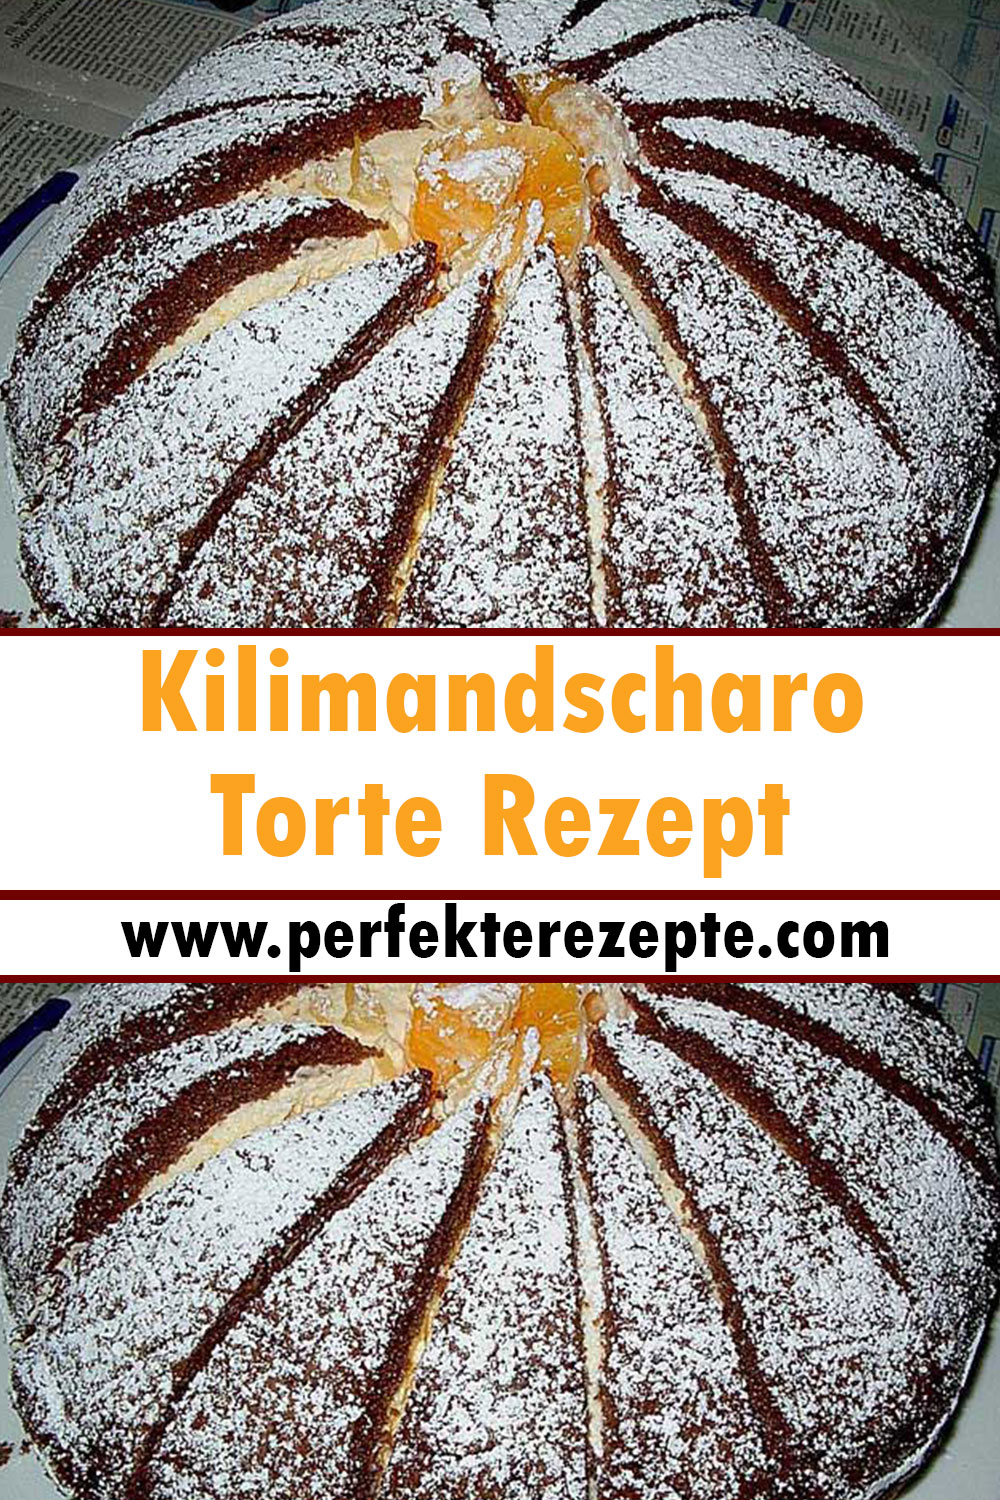 Kilimandscharo Torte Rezept